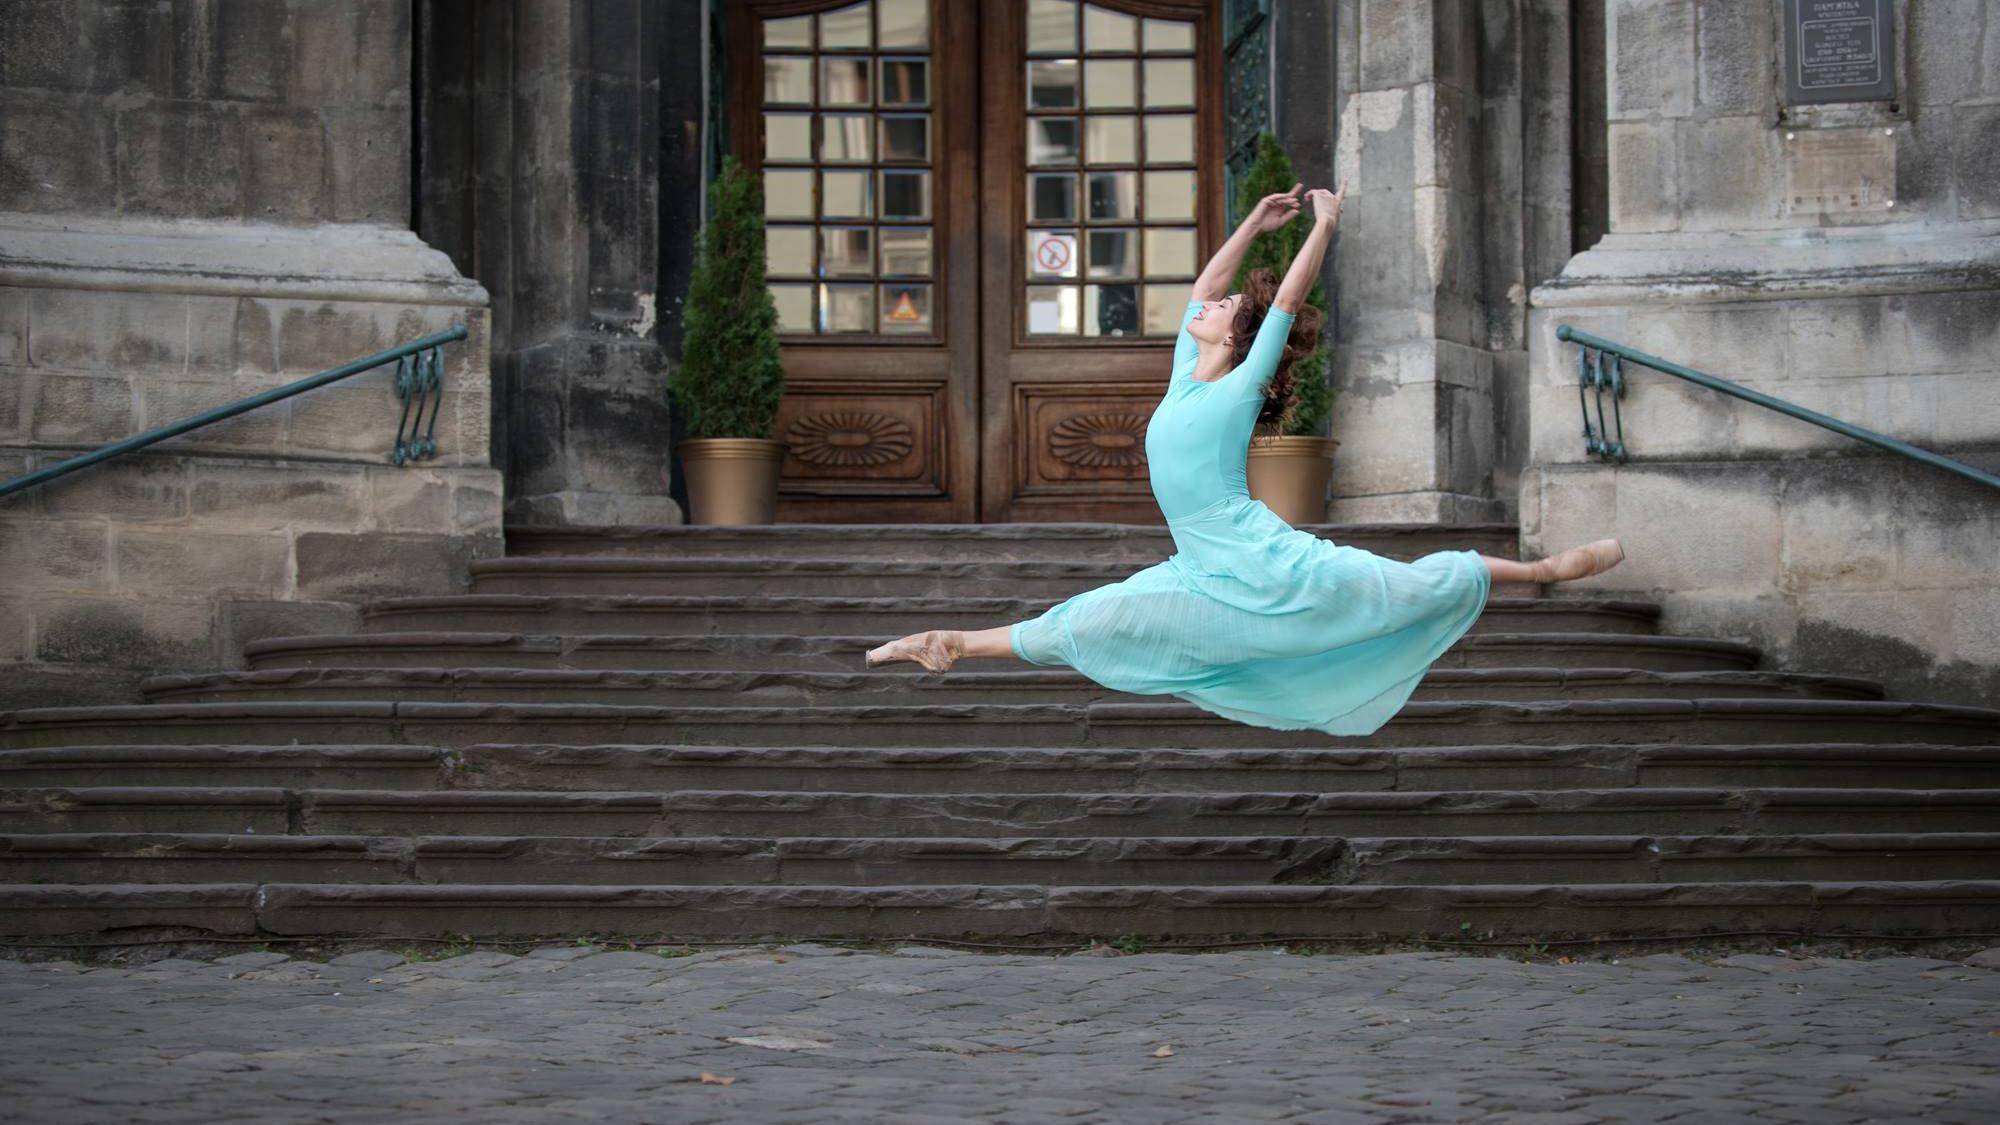 Нежность и грация: впечатляющие фото балерин на улицах Львова